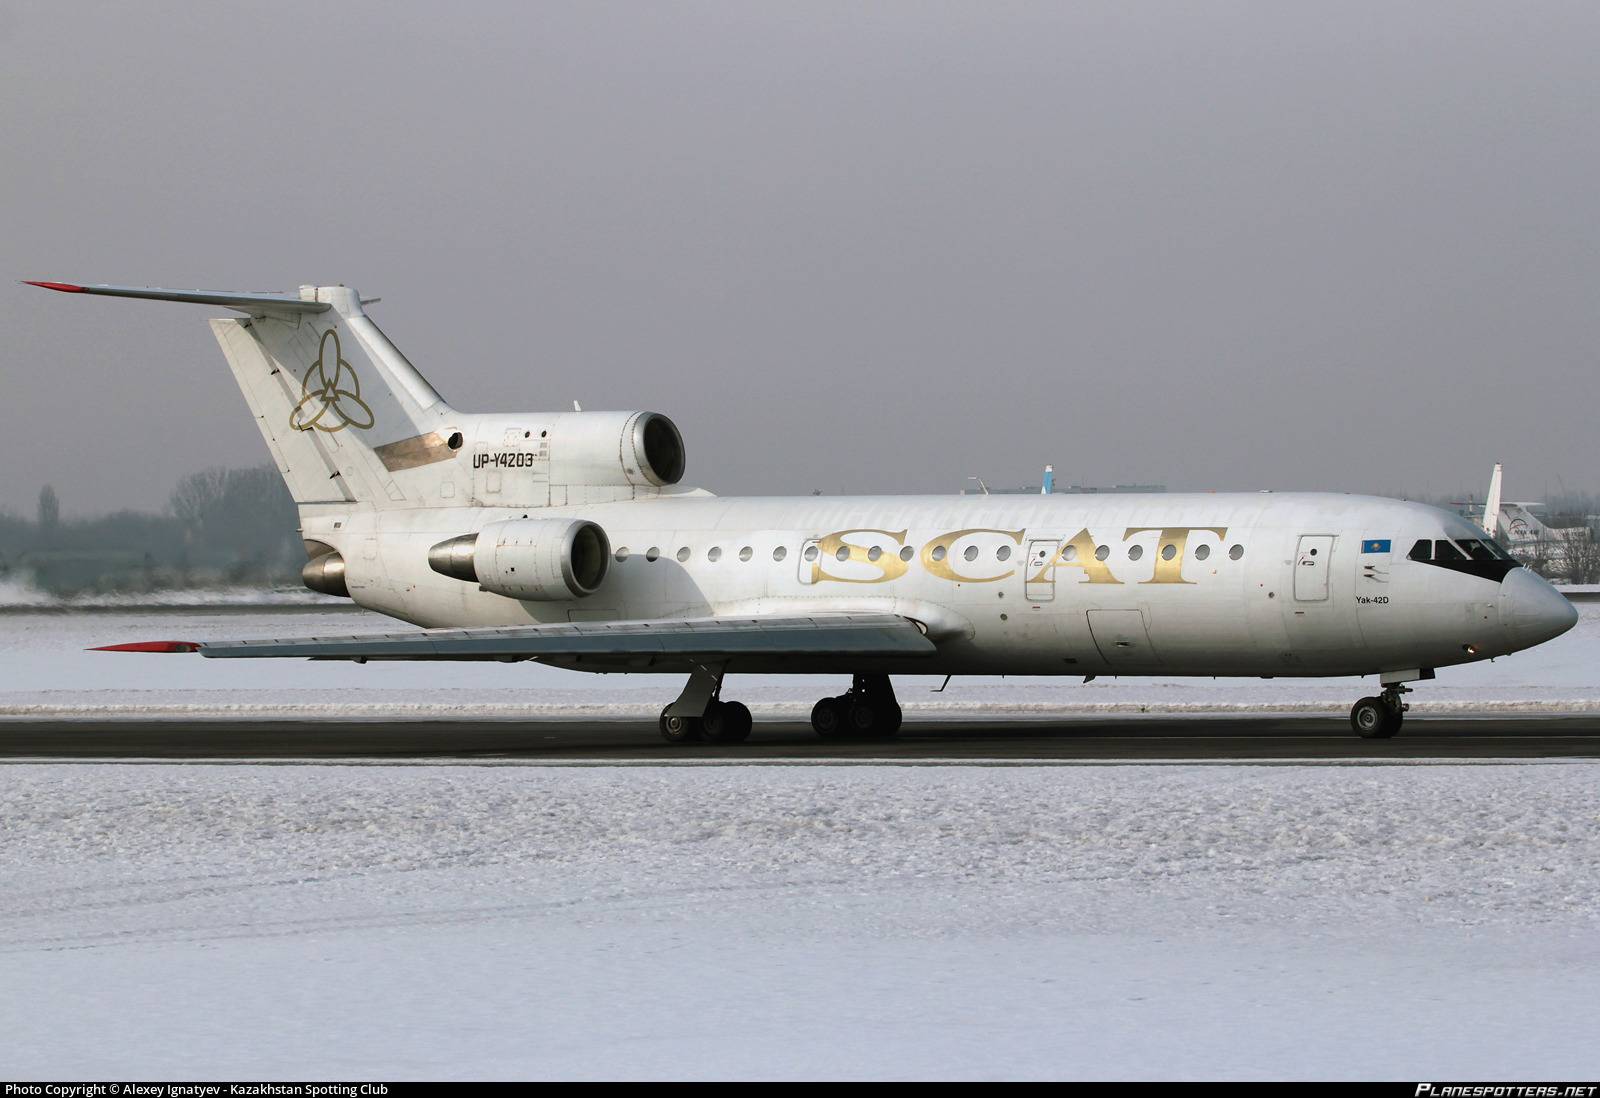 Scat – одна из самых небезопасных авиакомпаний мира — forbes kazakhstan